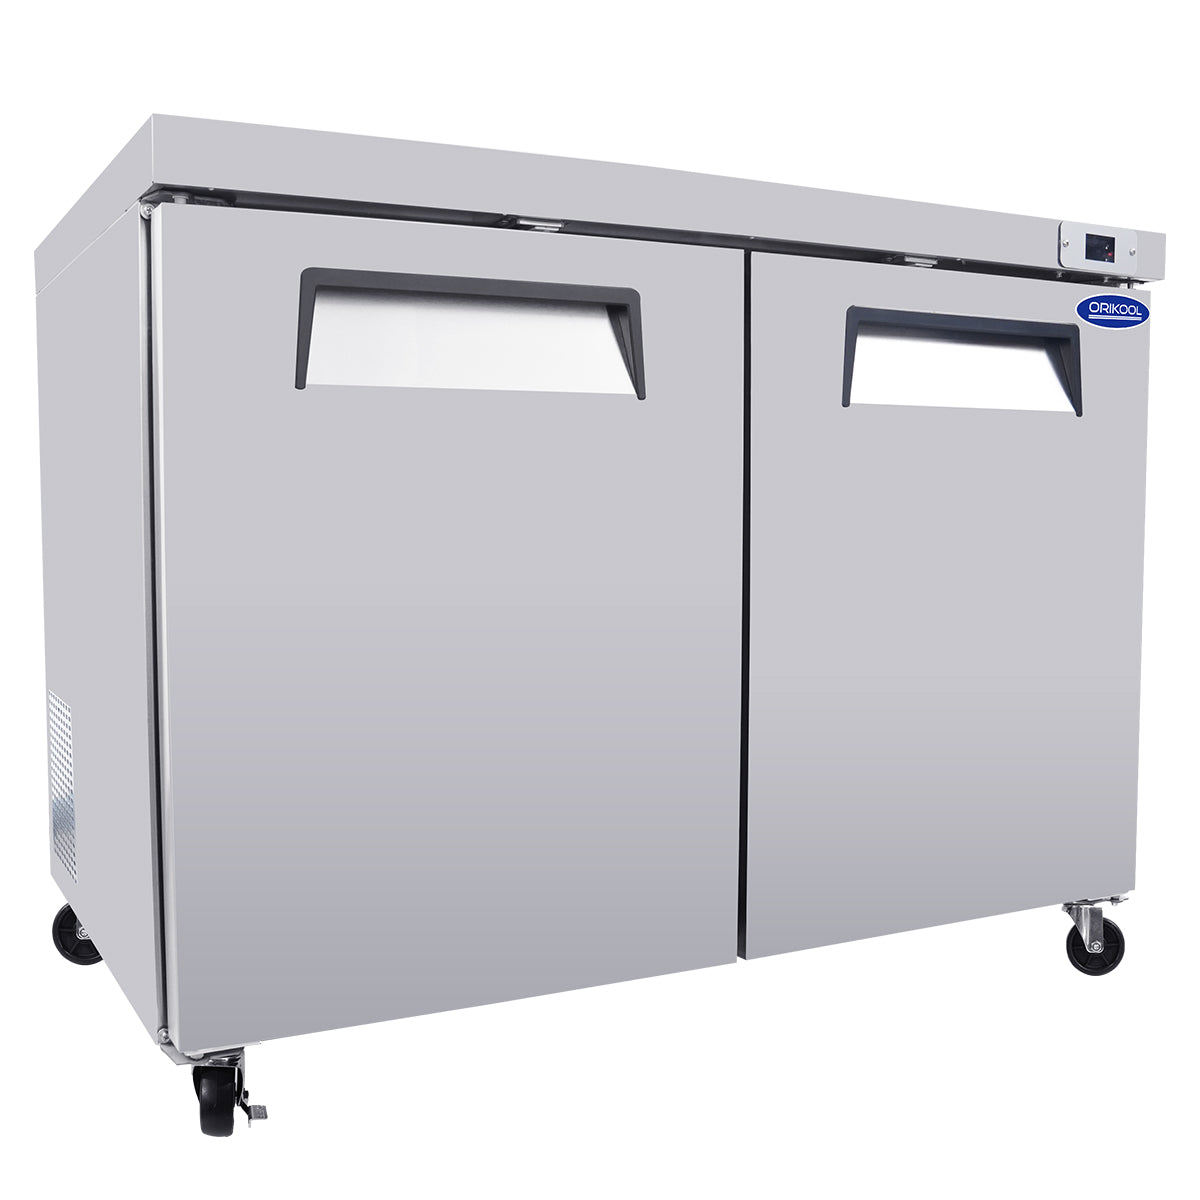 ORIKOOL 48'' 2-Door 14.1 cu. ft. Stainless Steel Undercounter & Work Top Refrigerator TUC48R